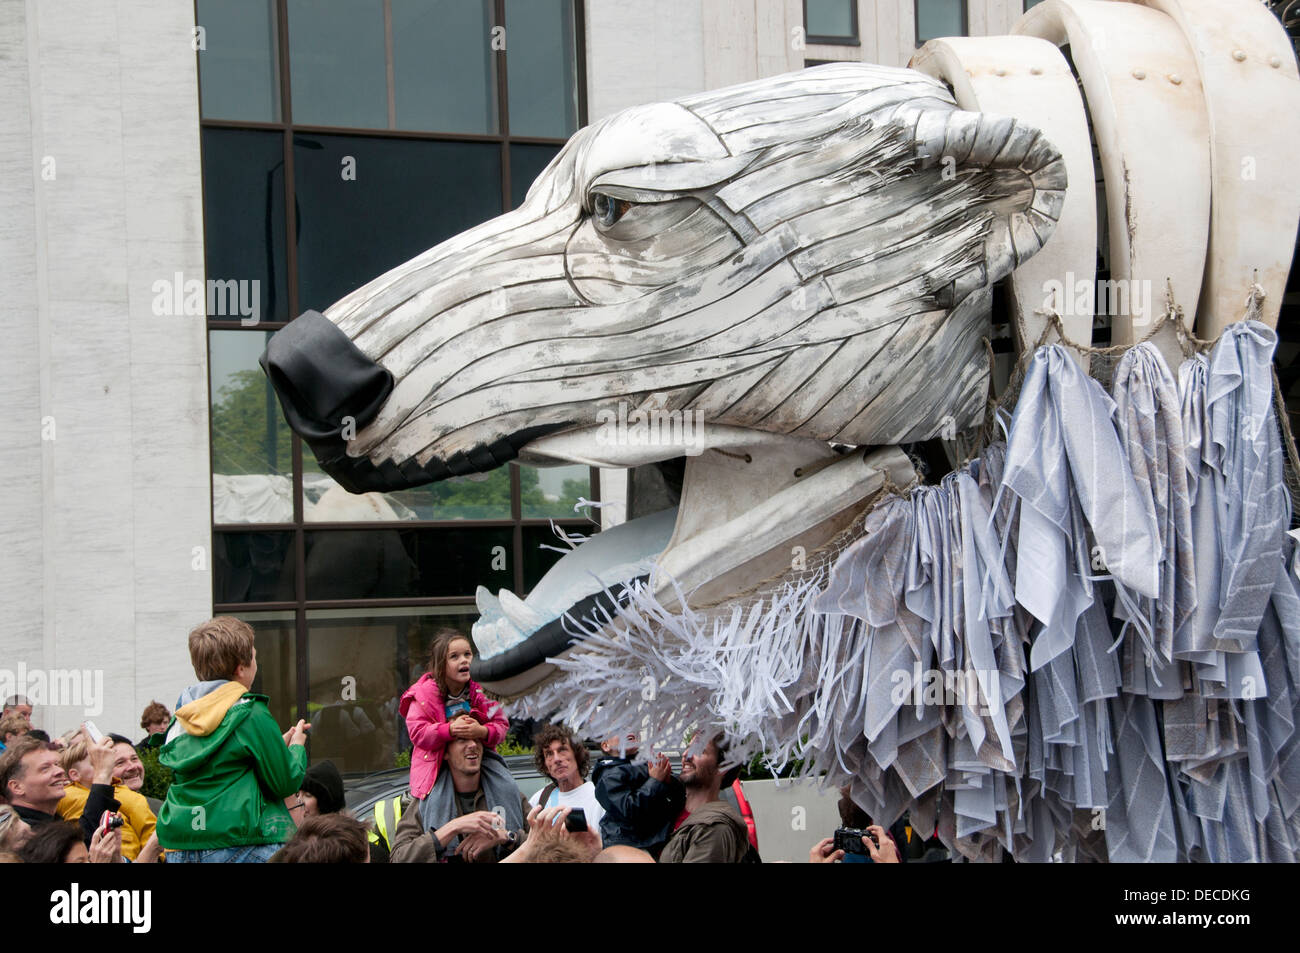 Aurora, die zweistelligen-Doppeldecker-Bus-Größe Eisbär-Puppe im Auftrag von Greenpeace eine Arktis-inspirierten Streetparade führen Stockfoto